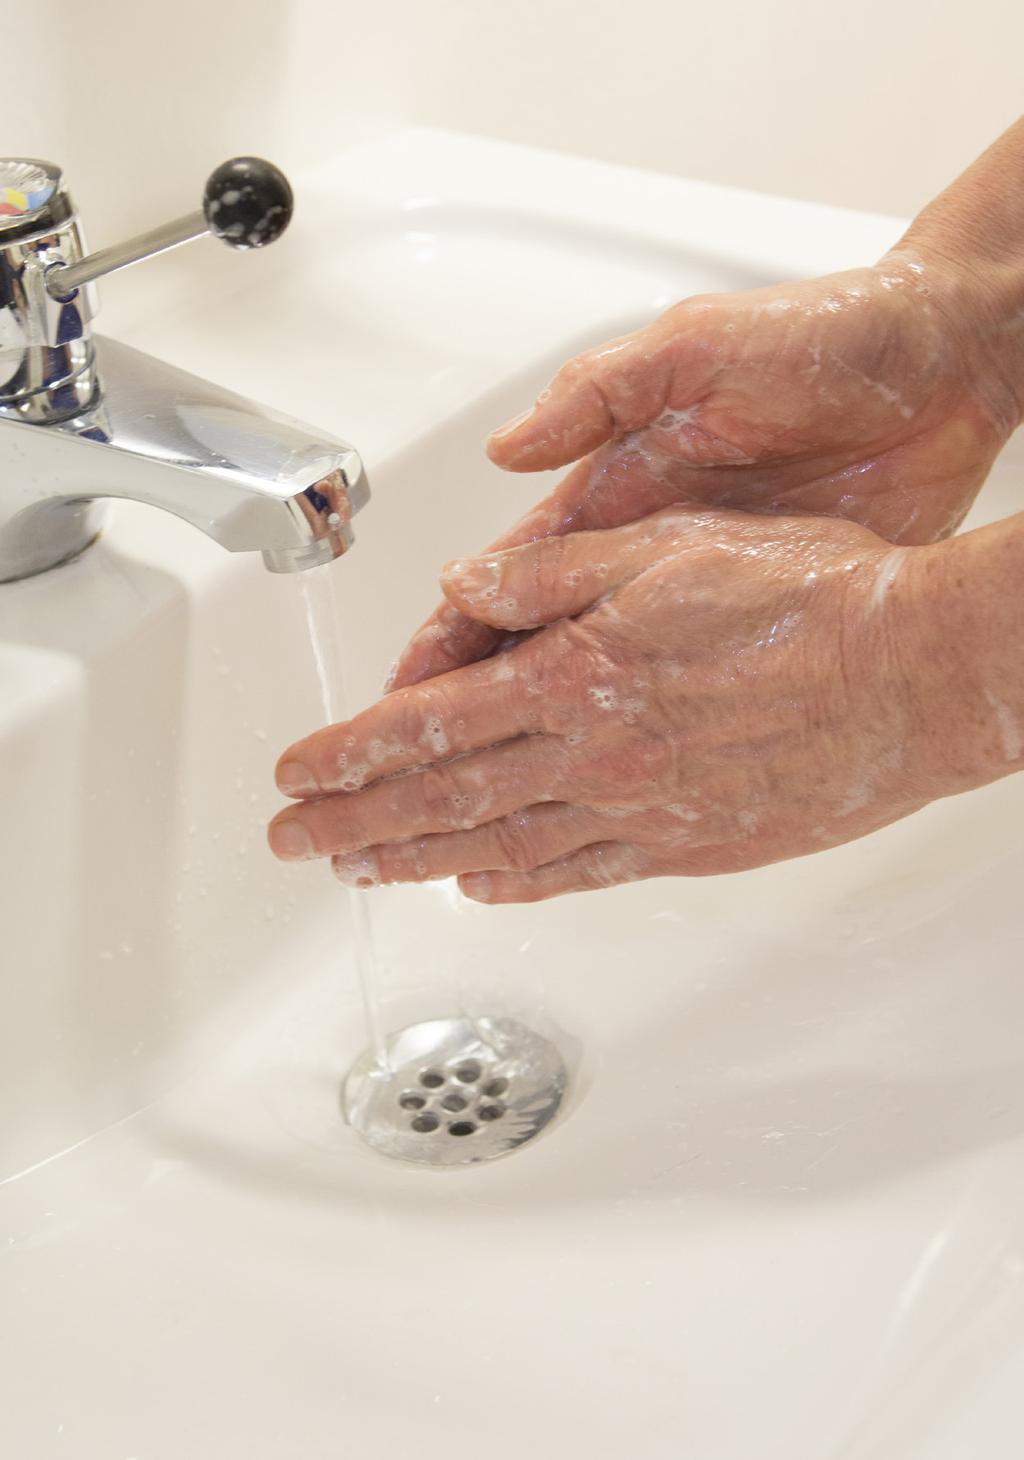 Handtvätt Handtvätt ska göras: När händerna är synligt smutsiga Alltid efter